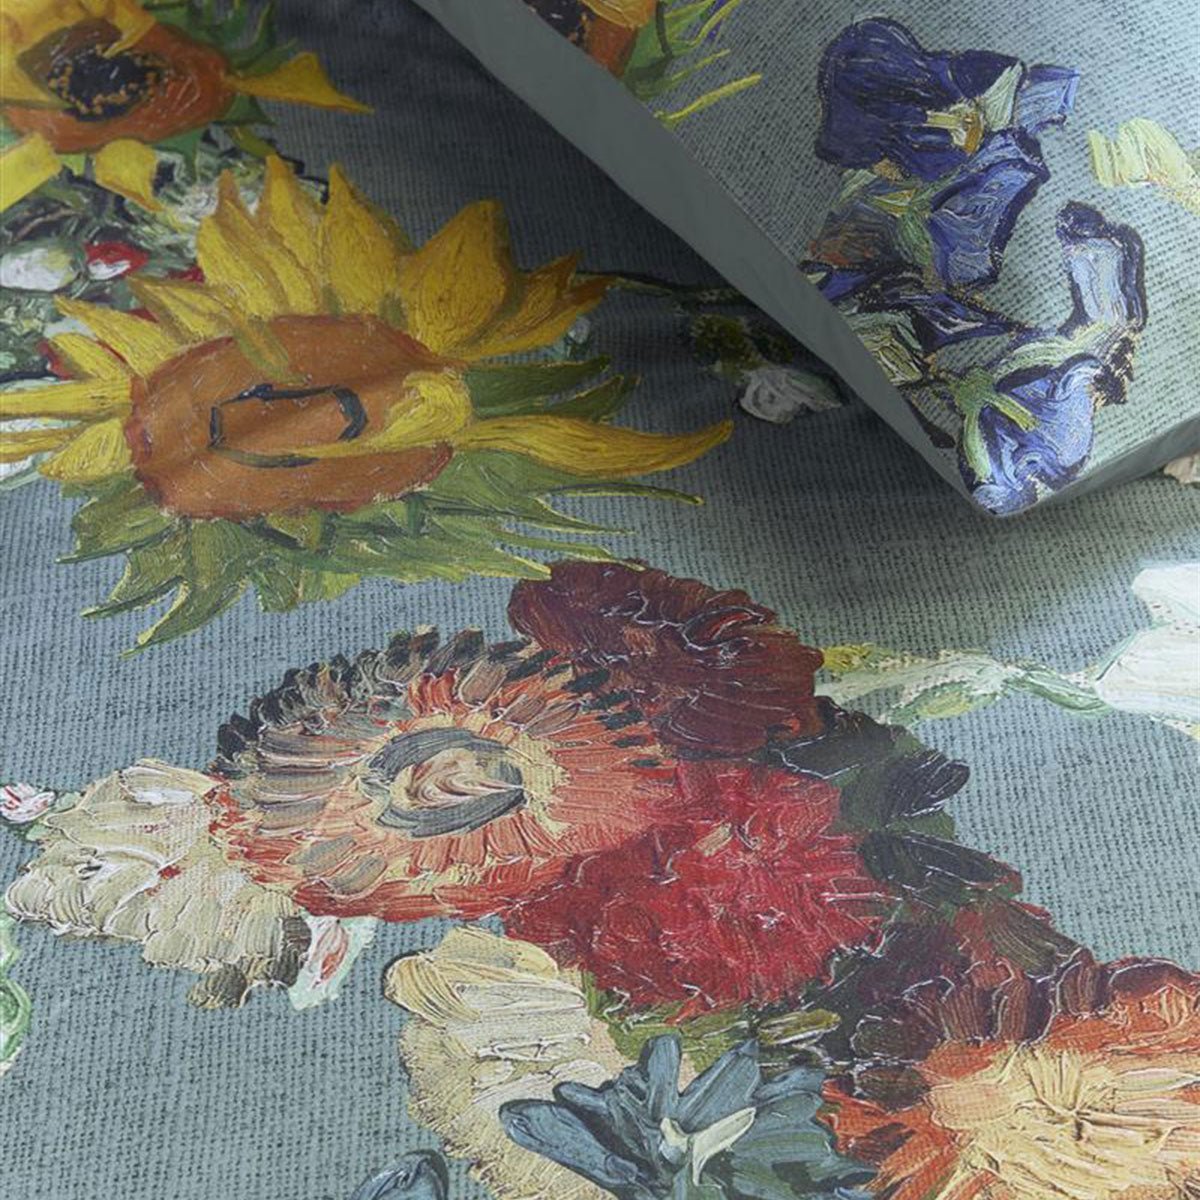 Bedding House Van Gogh Partout des Fleurs Green Cotton Sateen Quilt Cover Set King